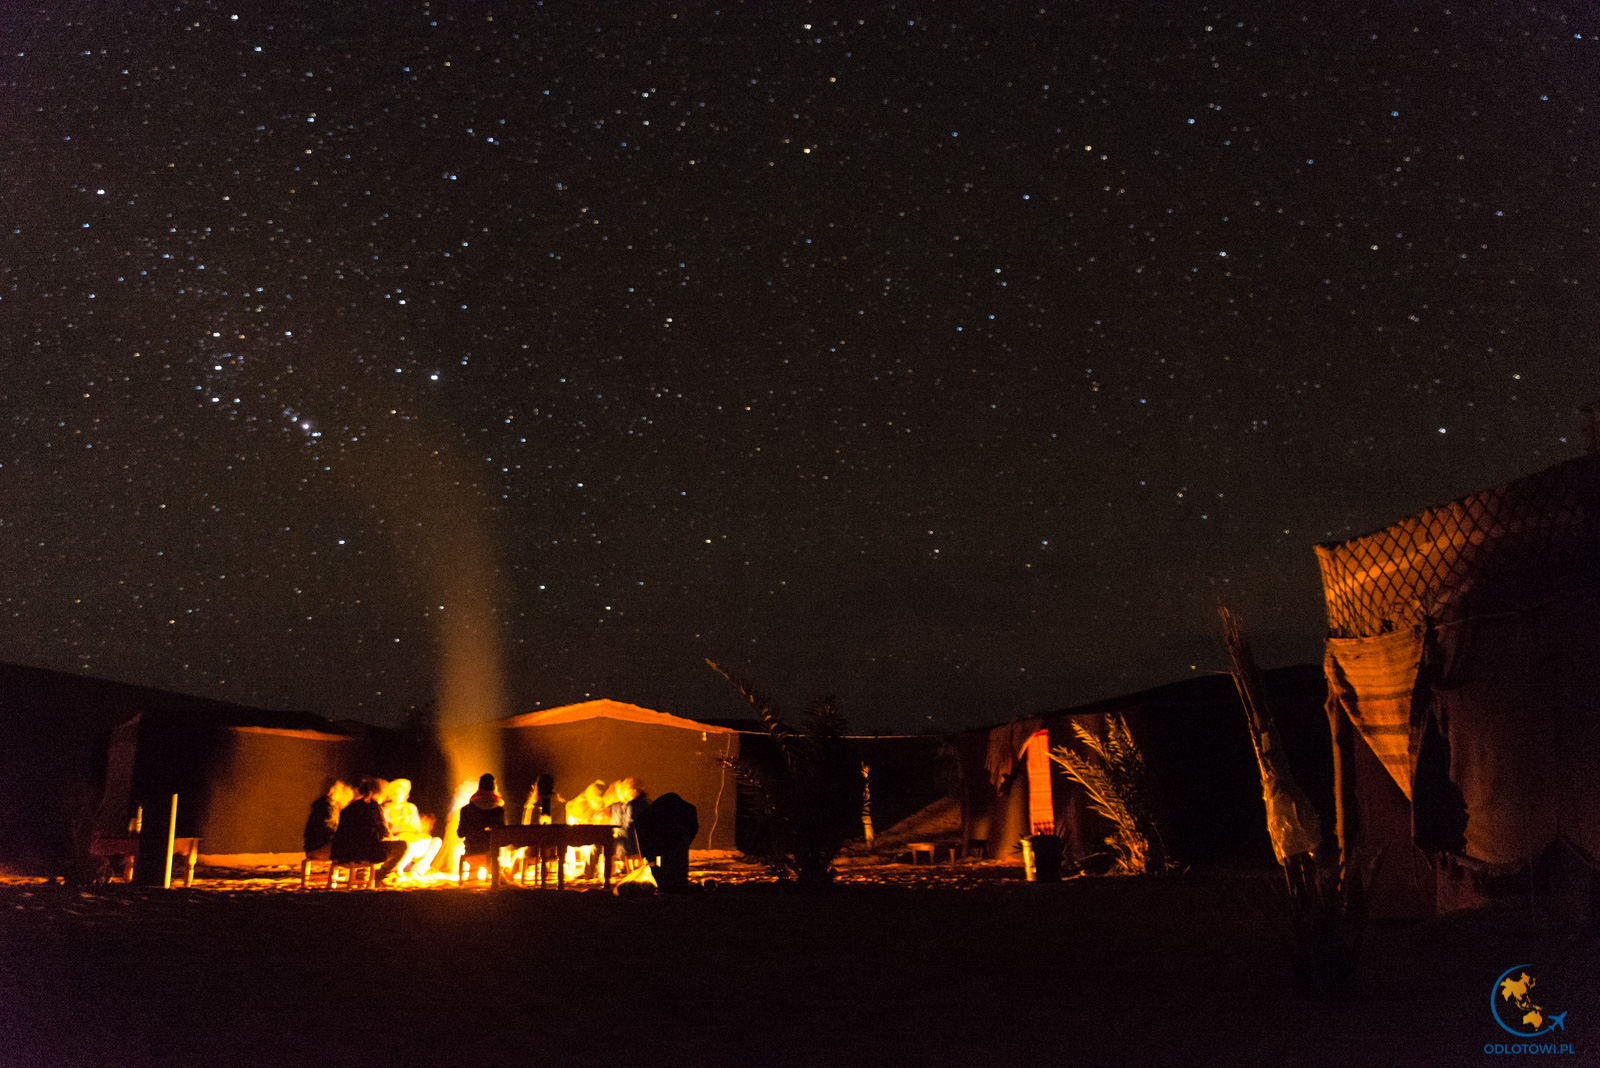 Noc na Saharze - niebo w gwiazdach | Desert Fireplace and stars